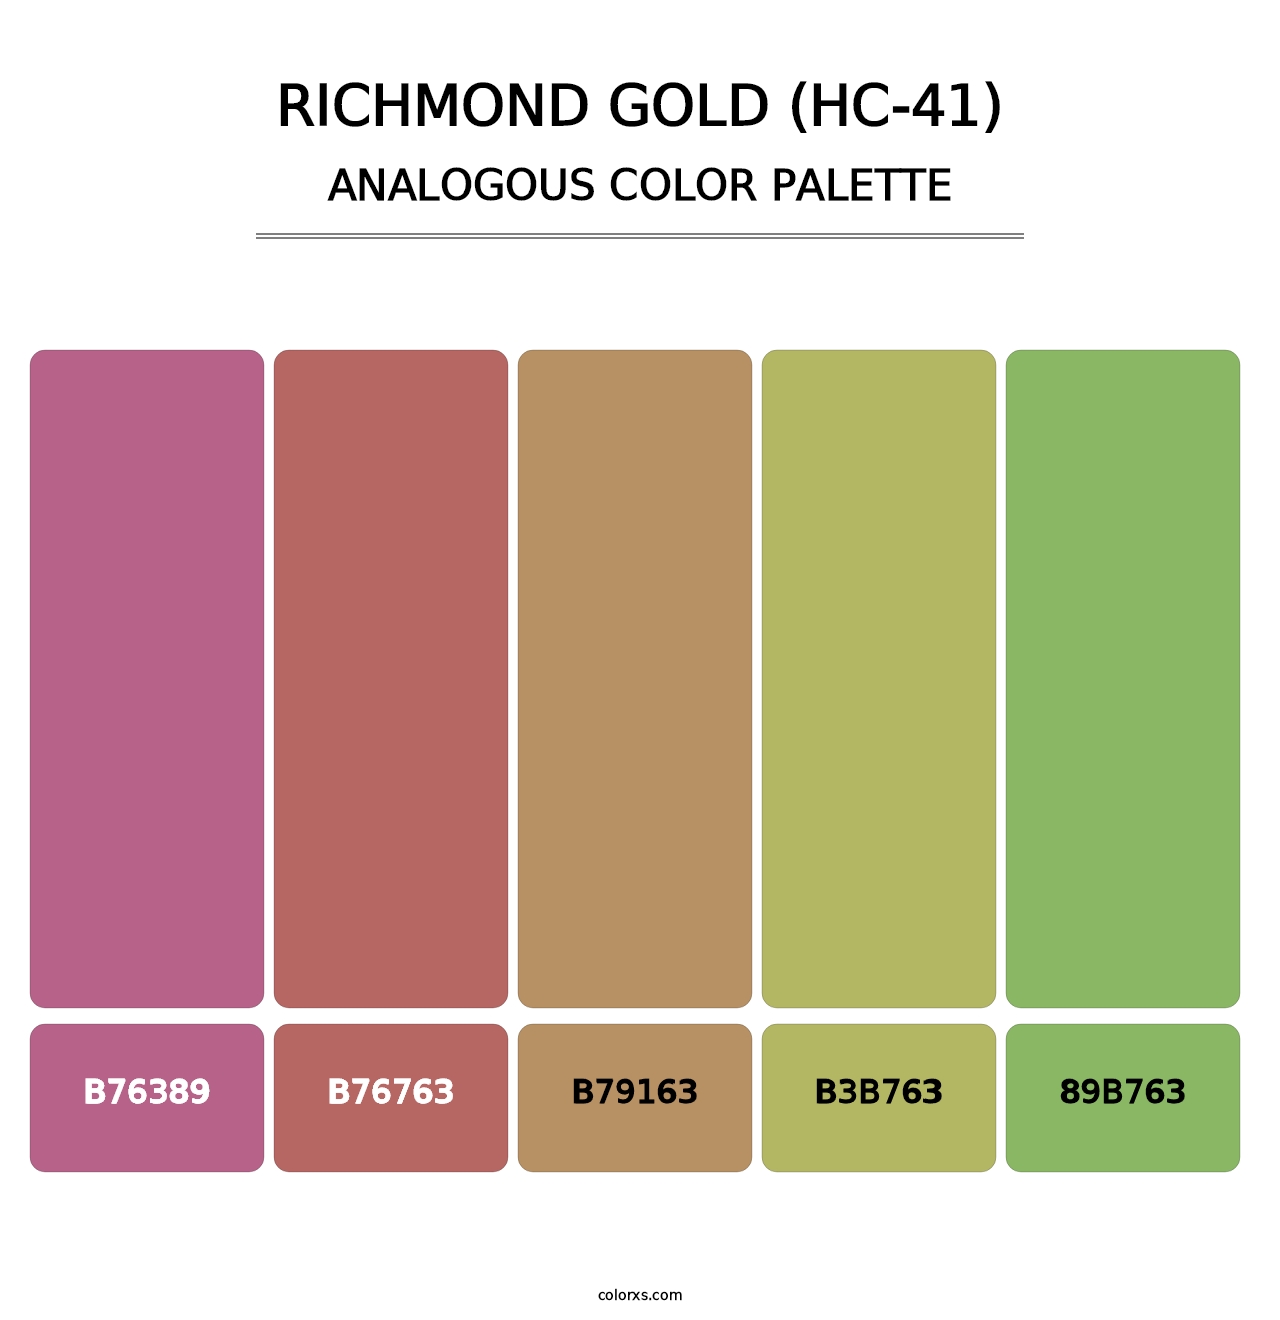 Richmond Gold (HC-41) - Analogous Color Palette